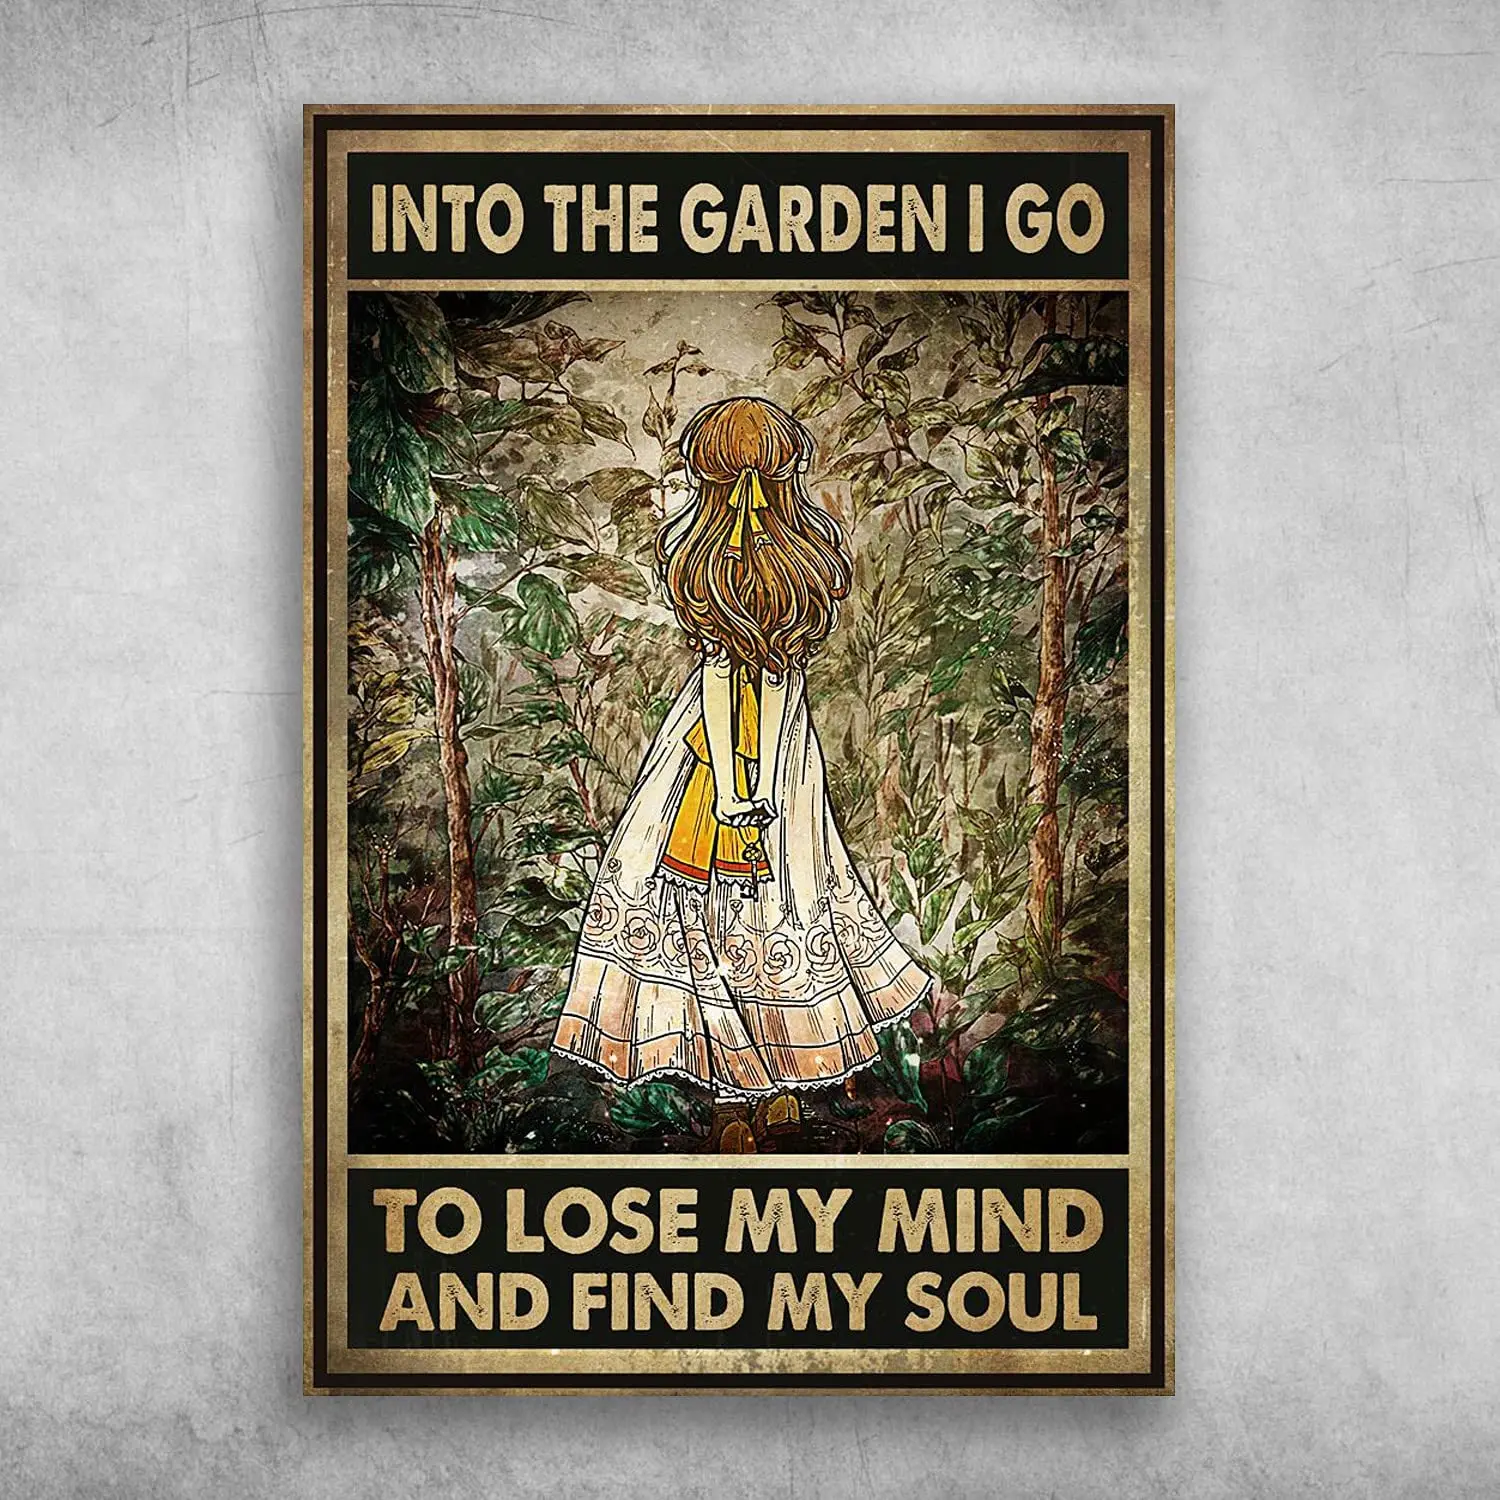 

В сад я иду, чтобы потерять ум и найти свою душу плакат стена металлический знак 8x12 дюймов